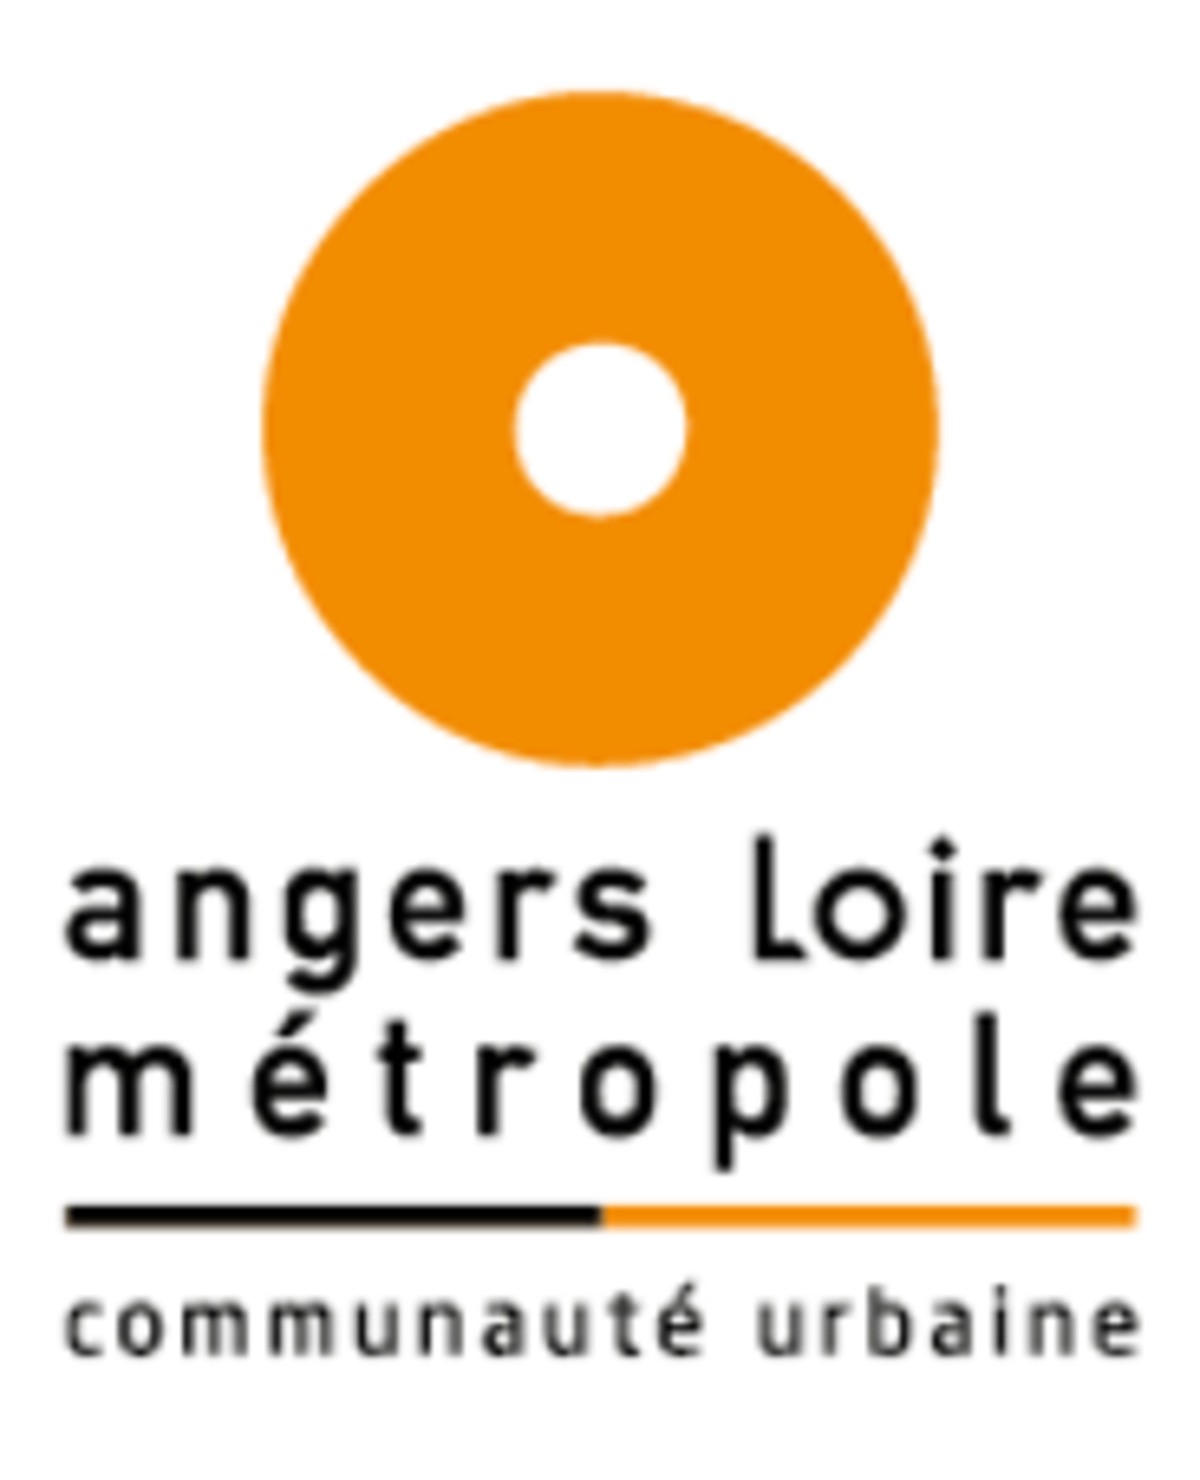 Angers Loire Métropole recherche une AMO économie circulaire sur son programme rénovation urbaine